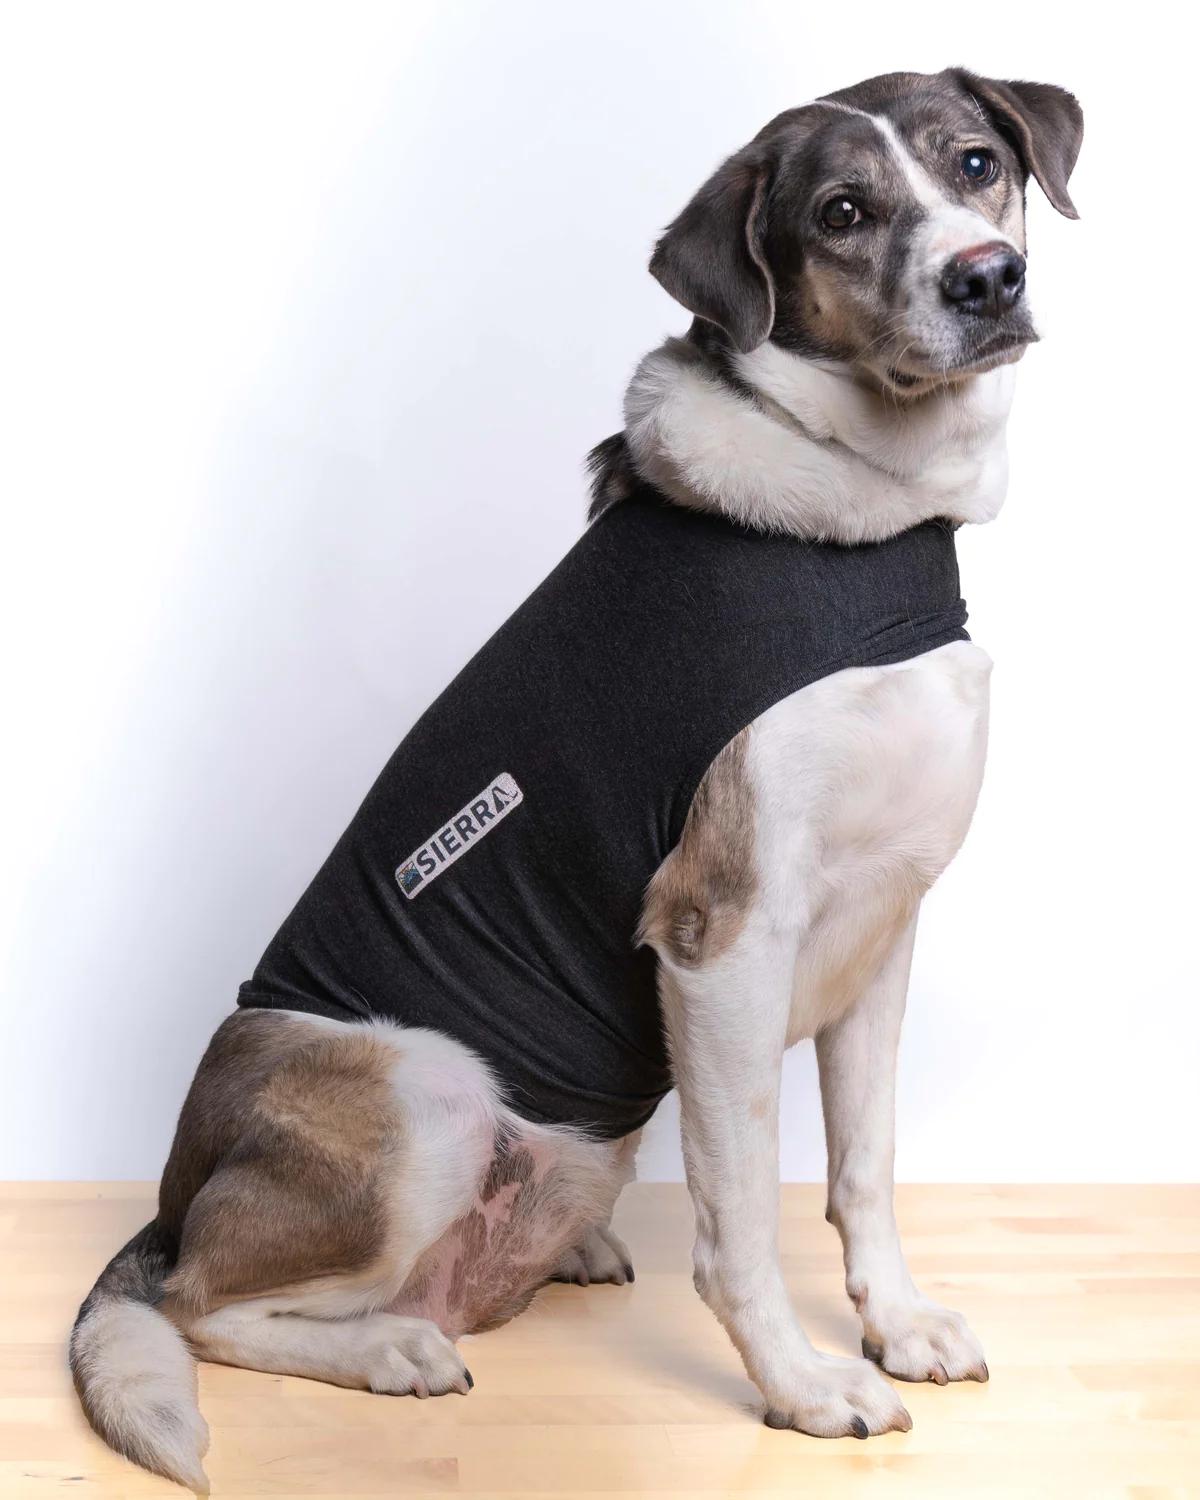 camisa antiestres para perros - Qué es un abrigo antiestres para perros